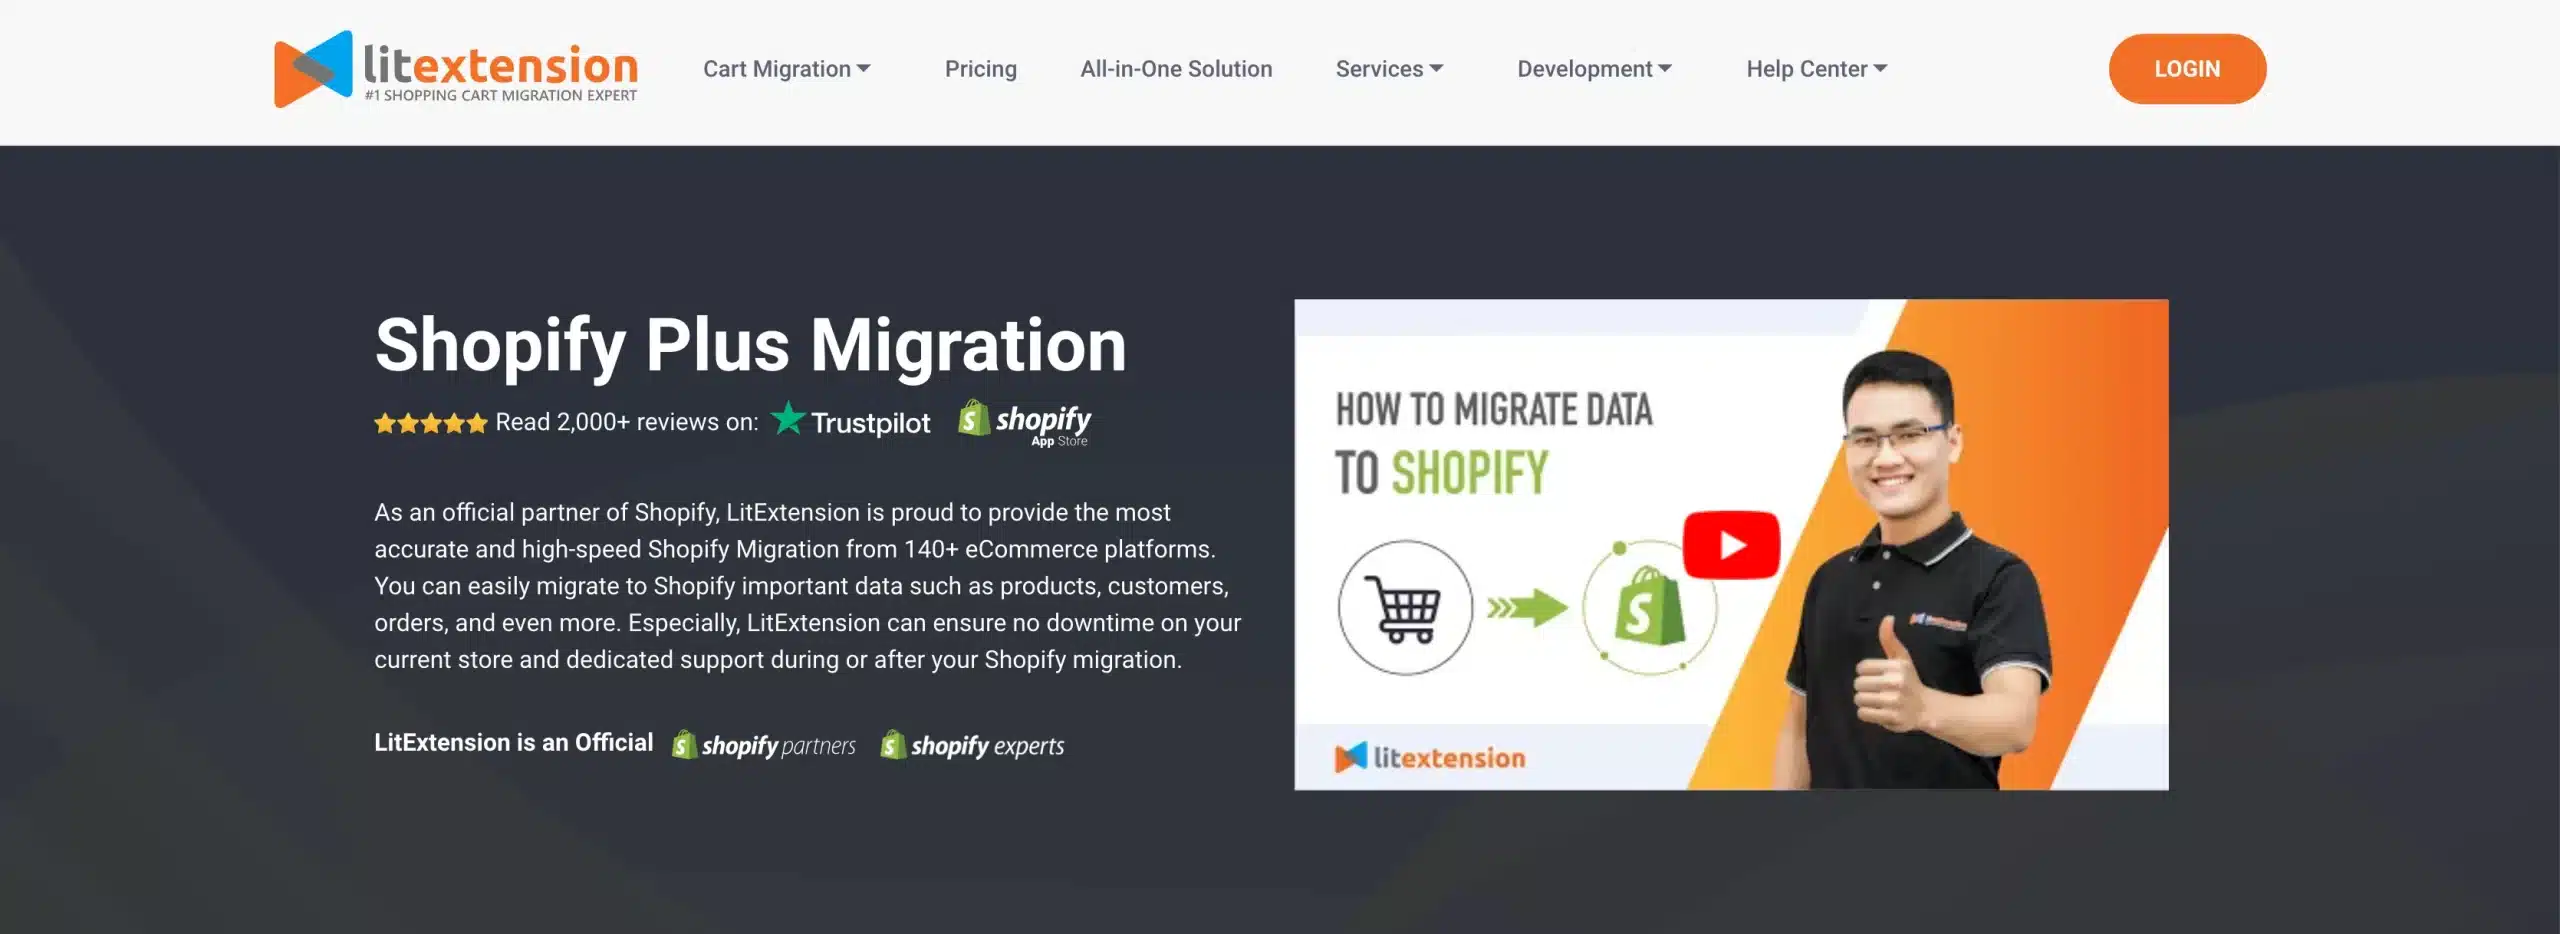 LitExtension Shopify Plus migration